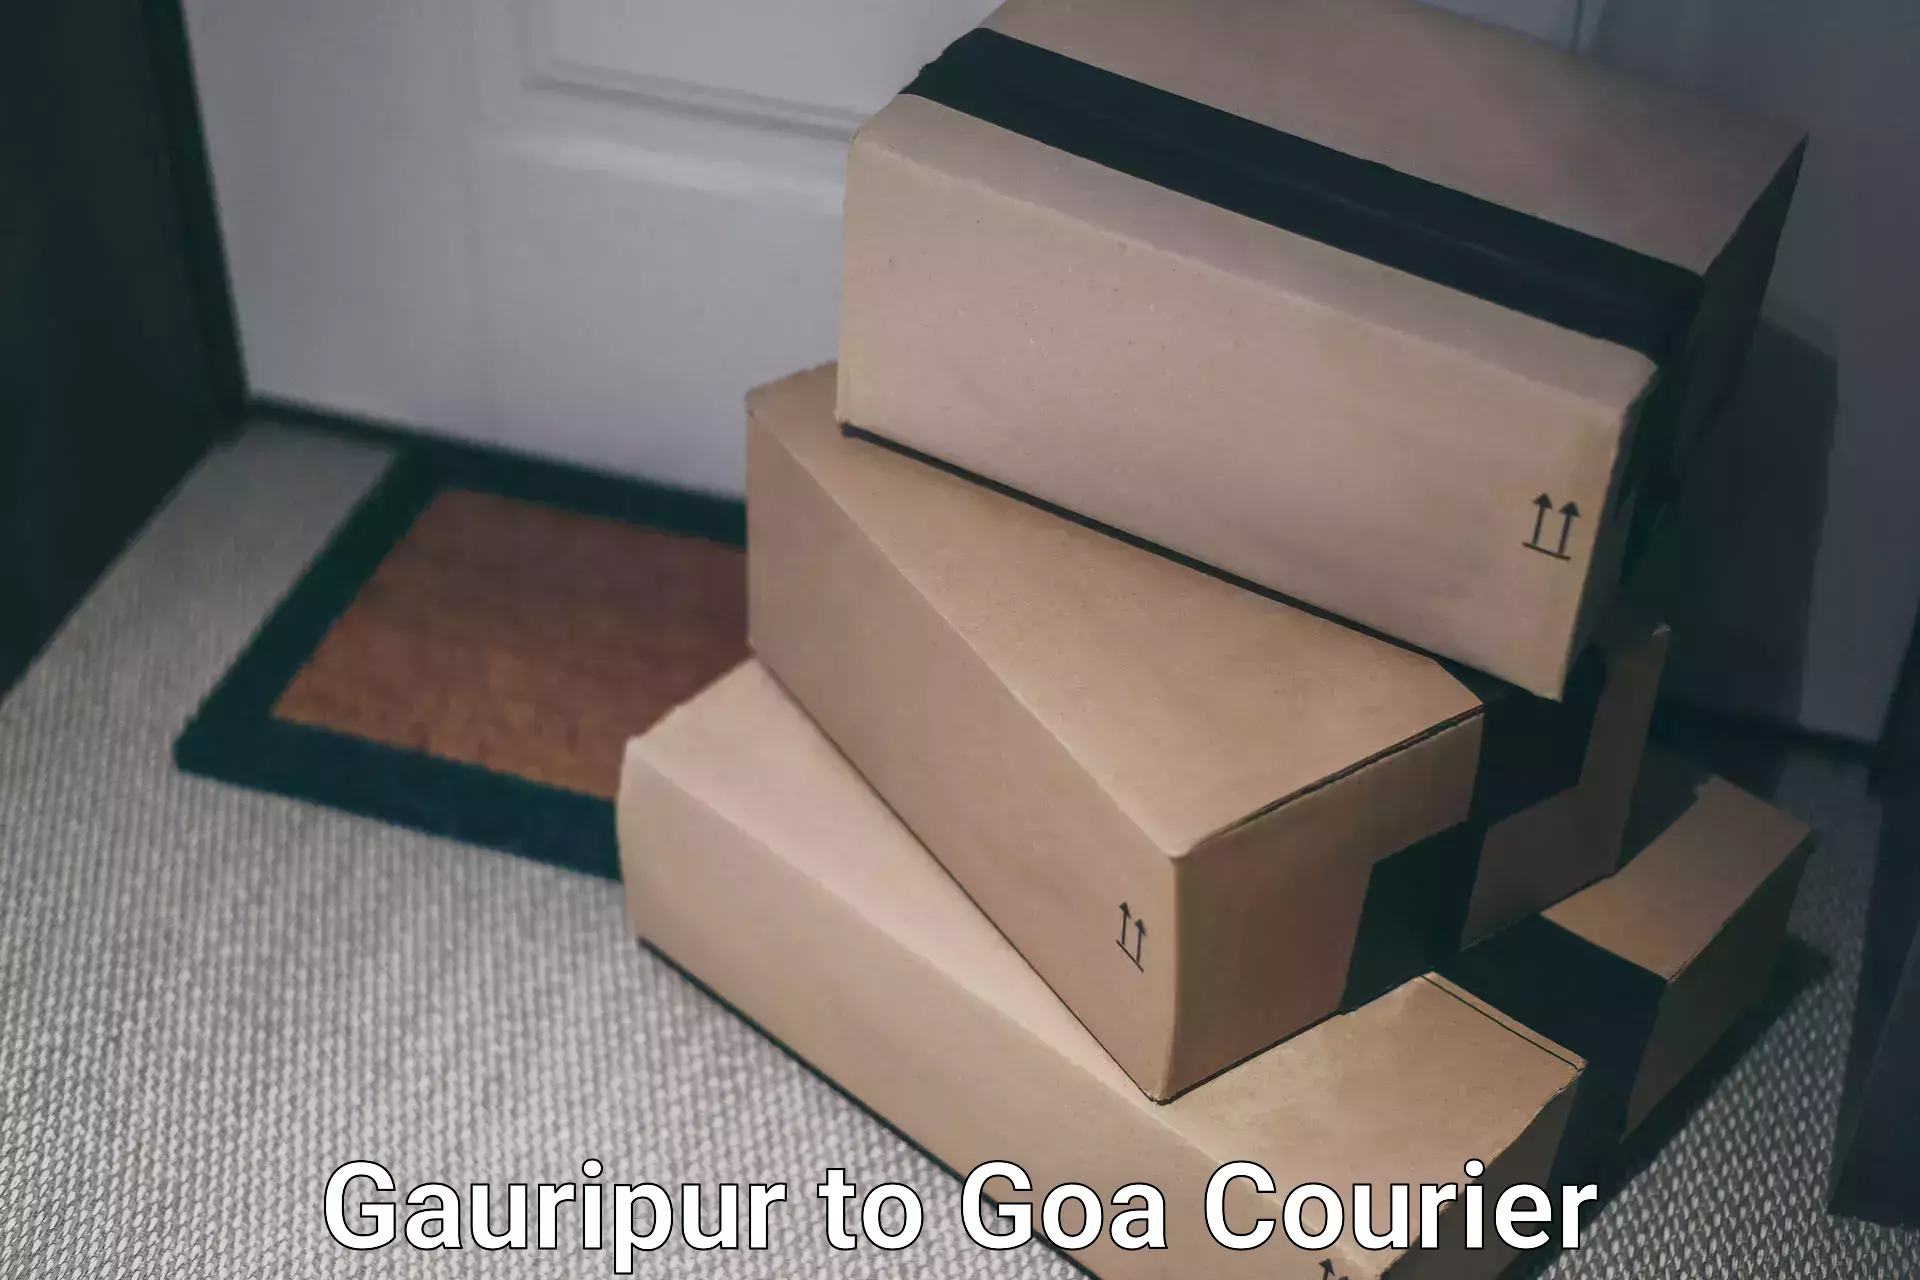 Tech-enabled shipping Gauripur to Panaji